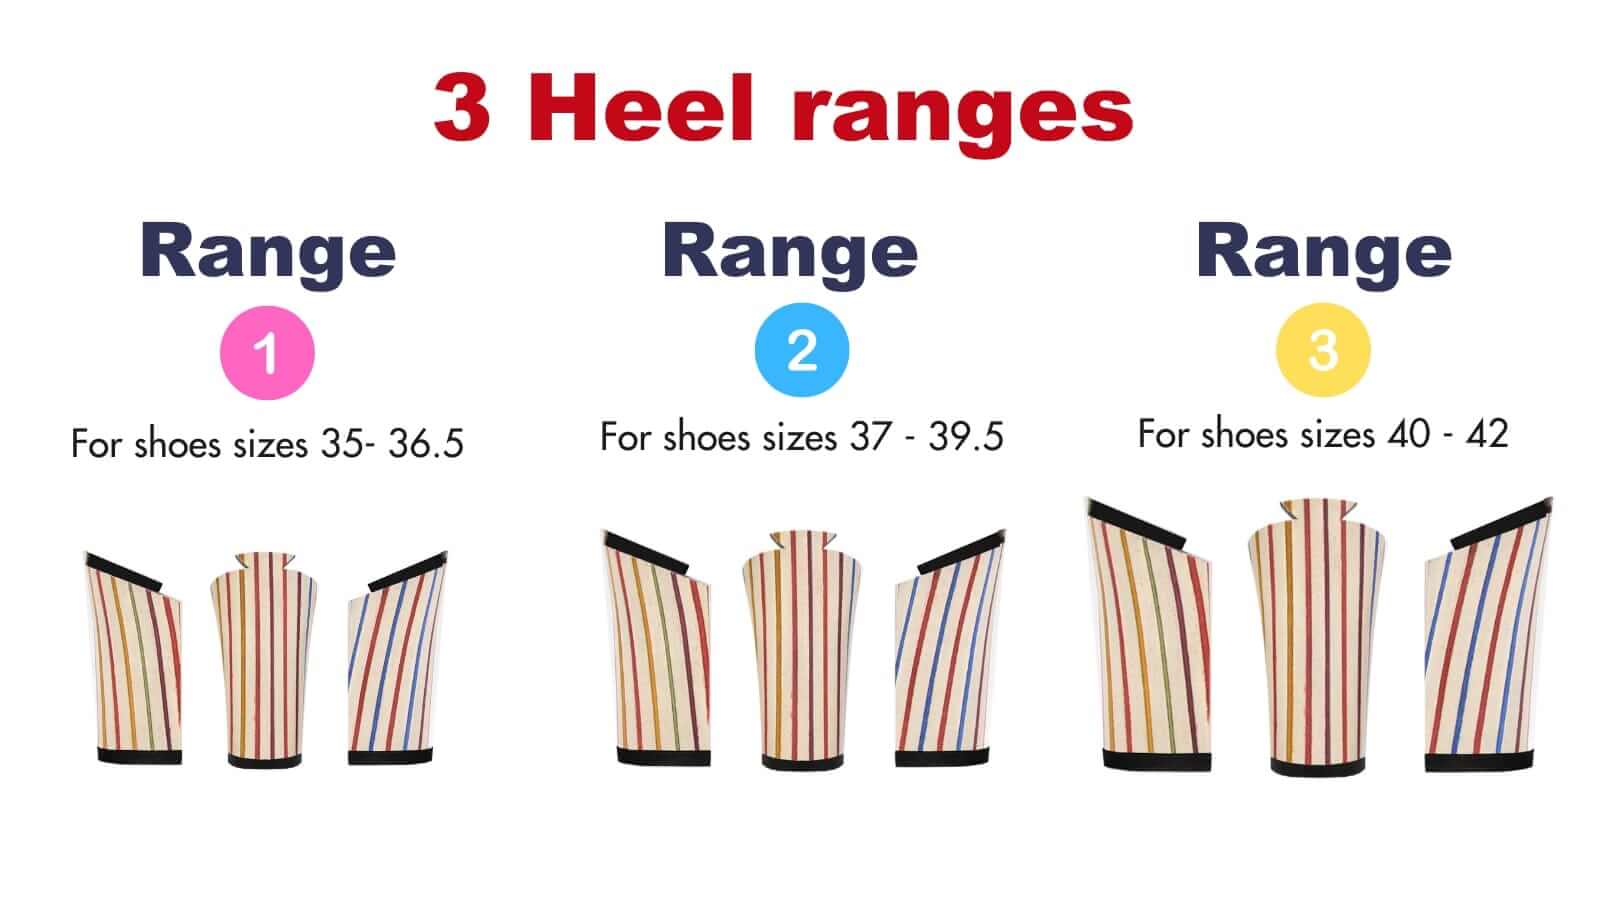 3 heel ranges